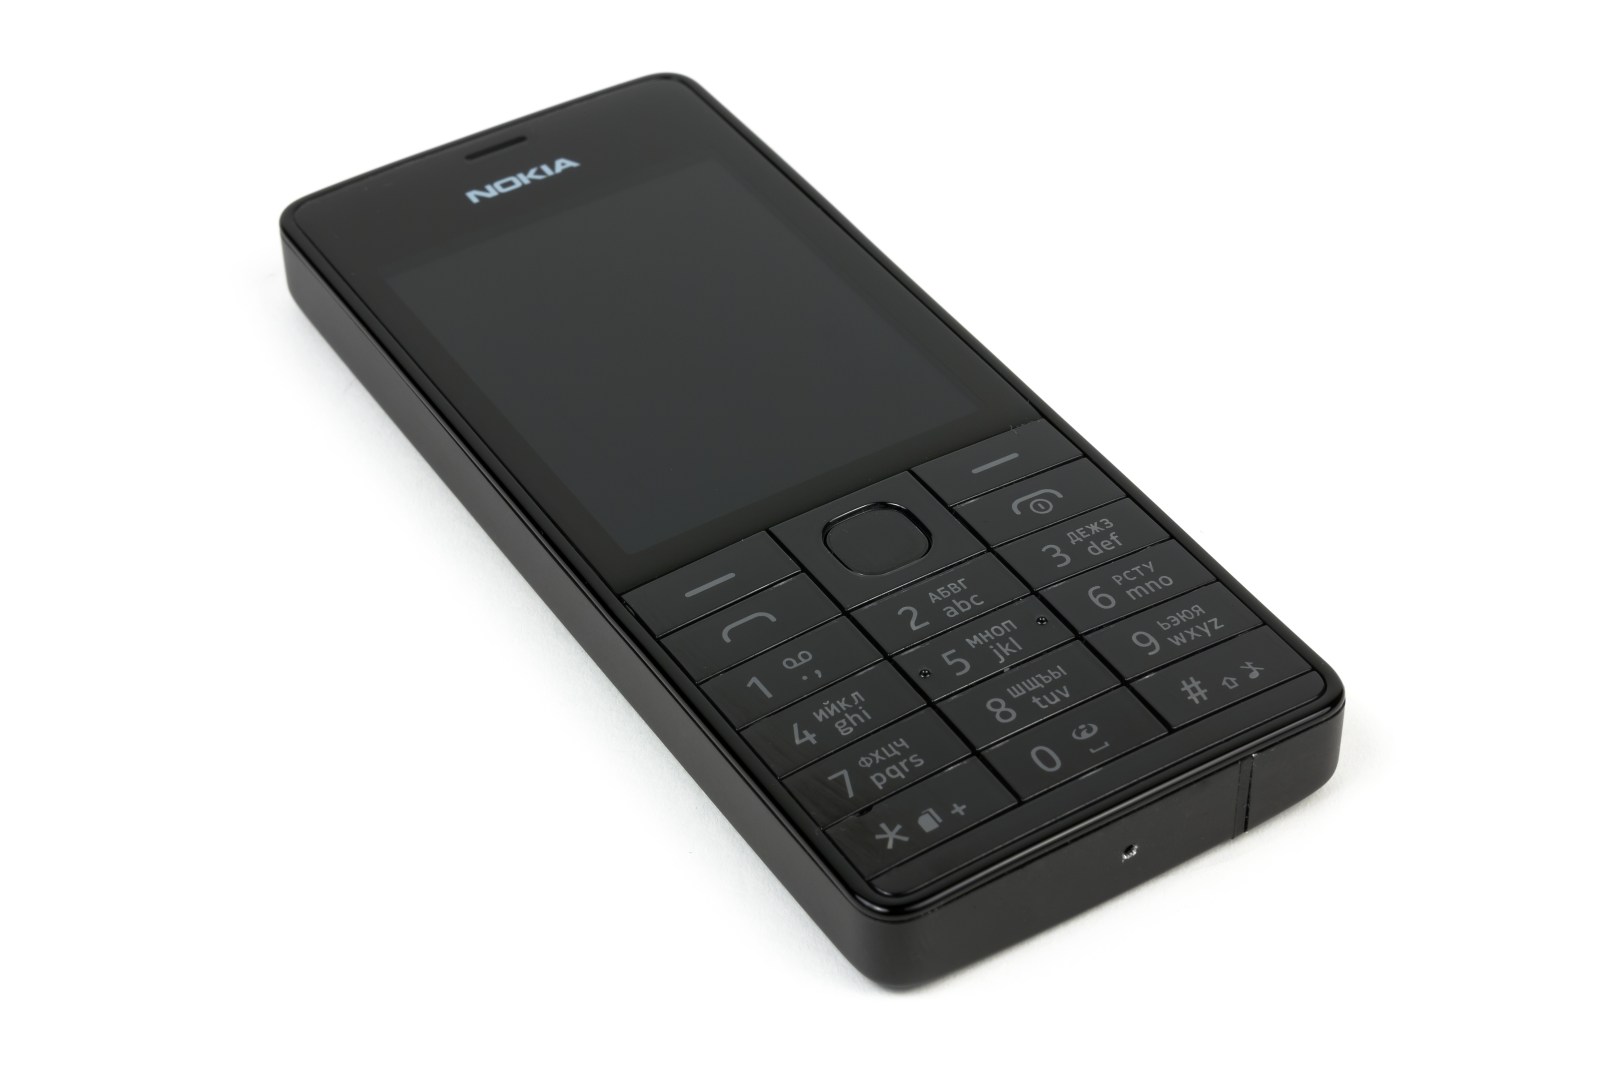 Дизайн телефона Nokia 515